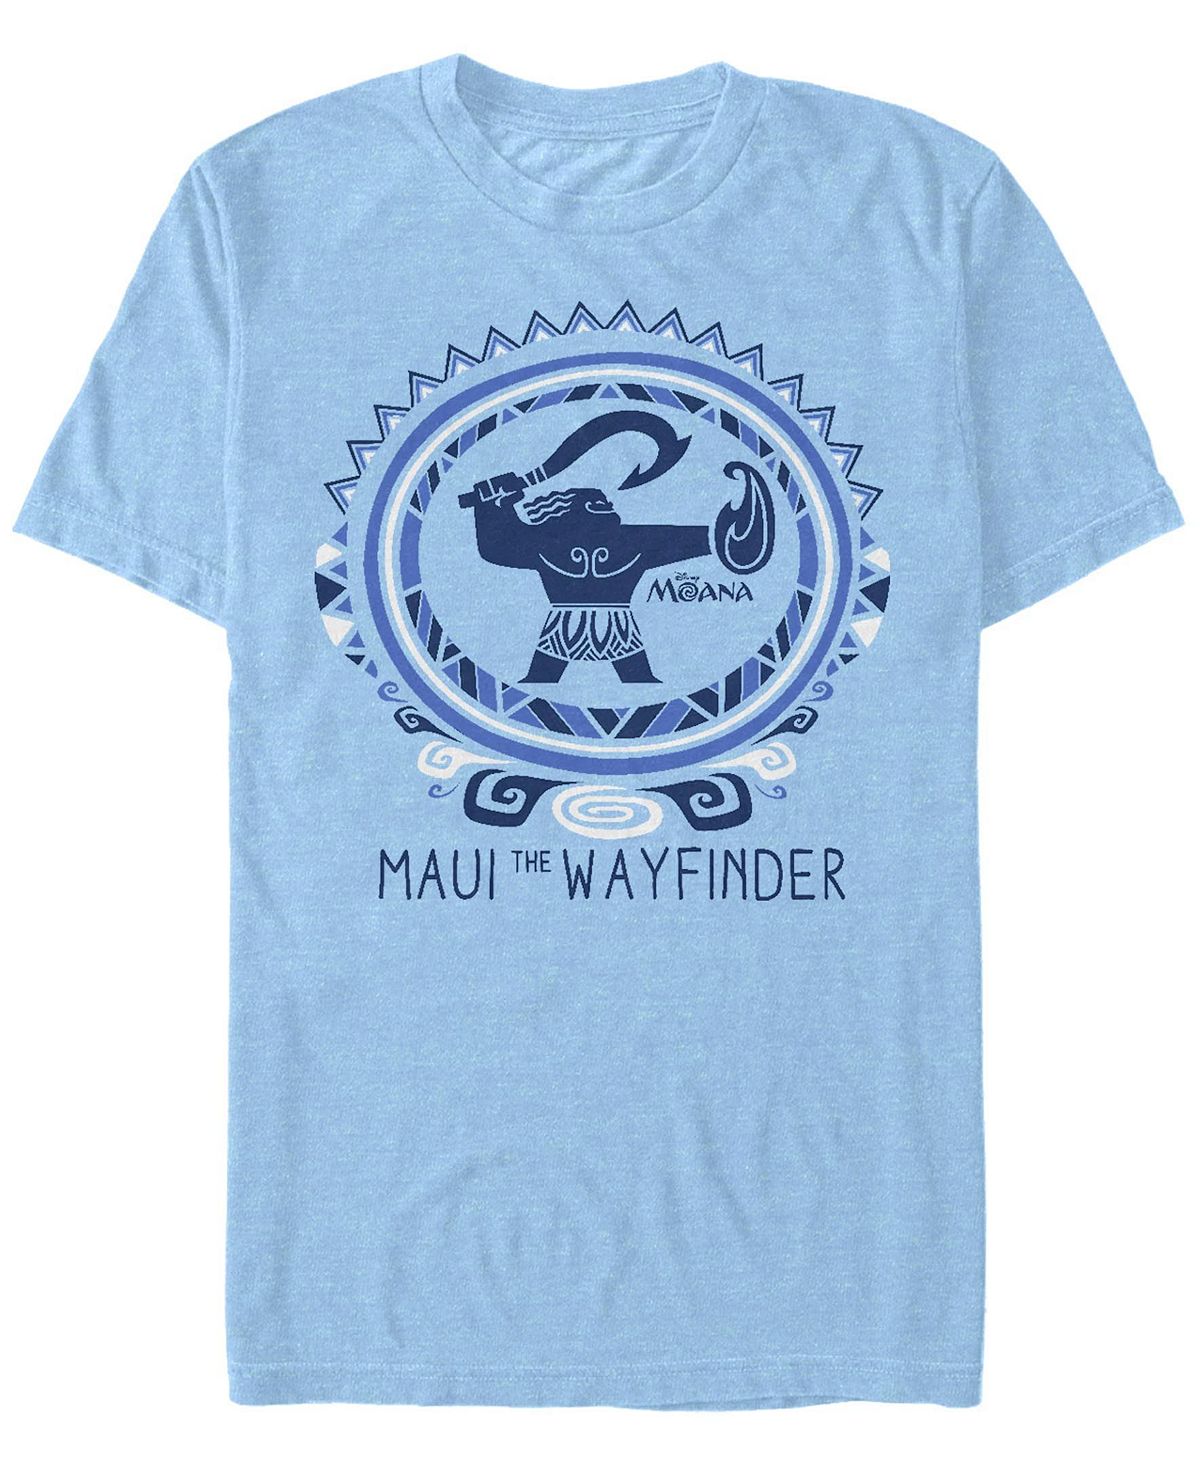 рюкзак пуа и хей хей синий с usb портом 3 Мужская футболка с круглым вырезом с короткими рукавами maui the wayfinder Fifth Sun, светло-синий